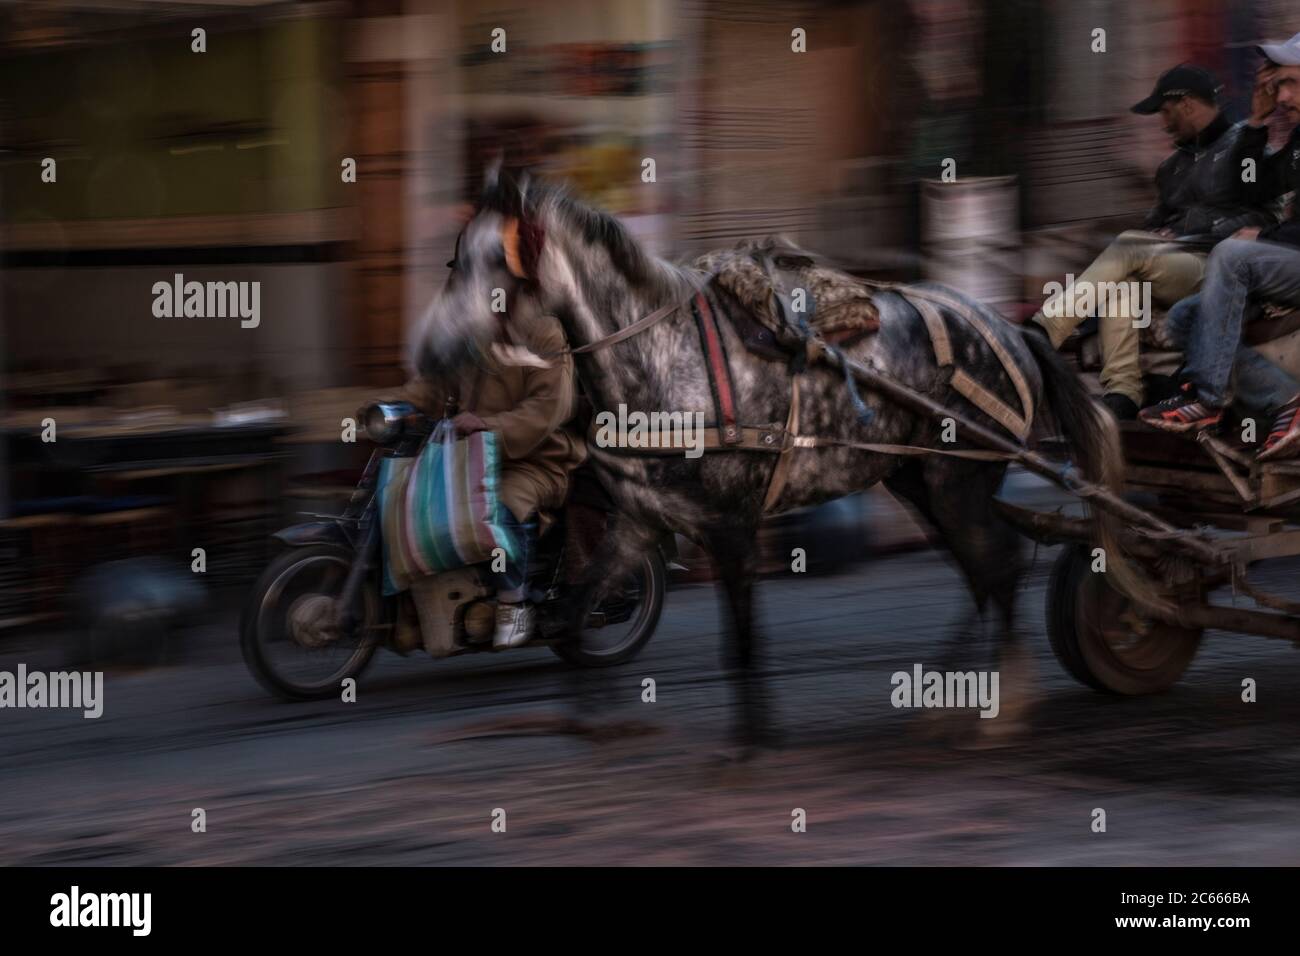 Horse carriage racing through a souk, Marrakech, Morocco Stock Photo